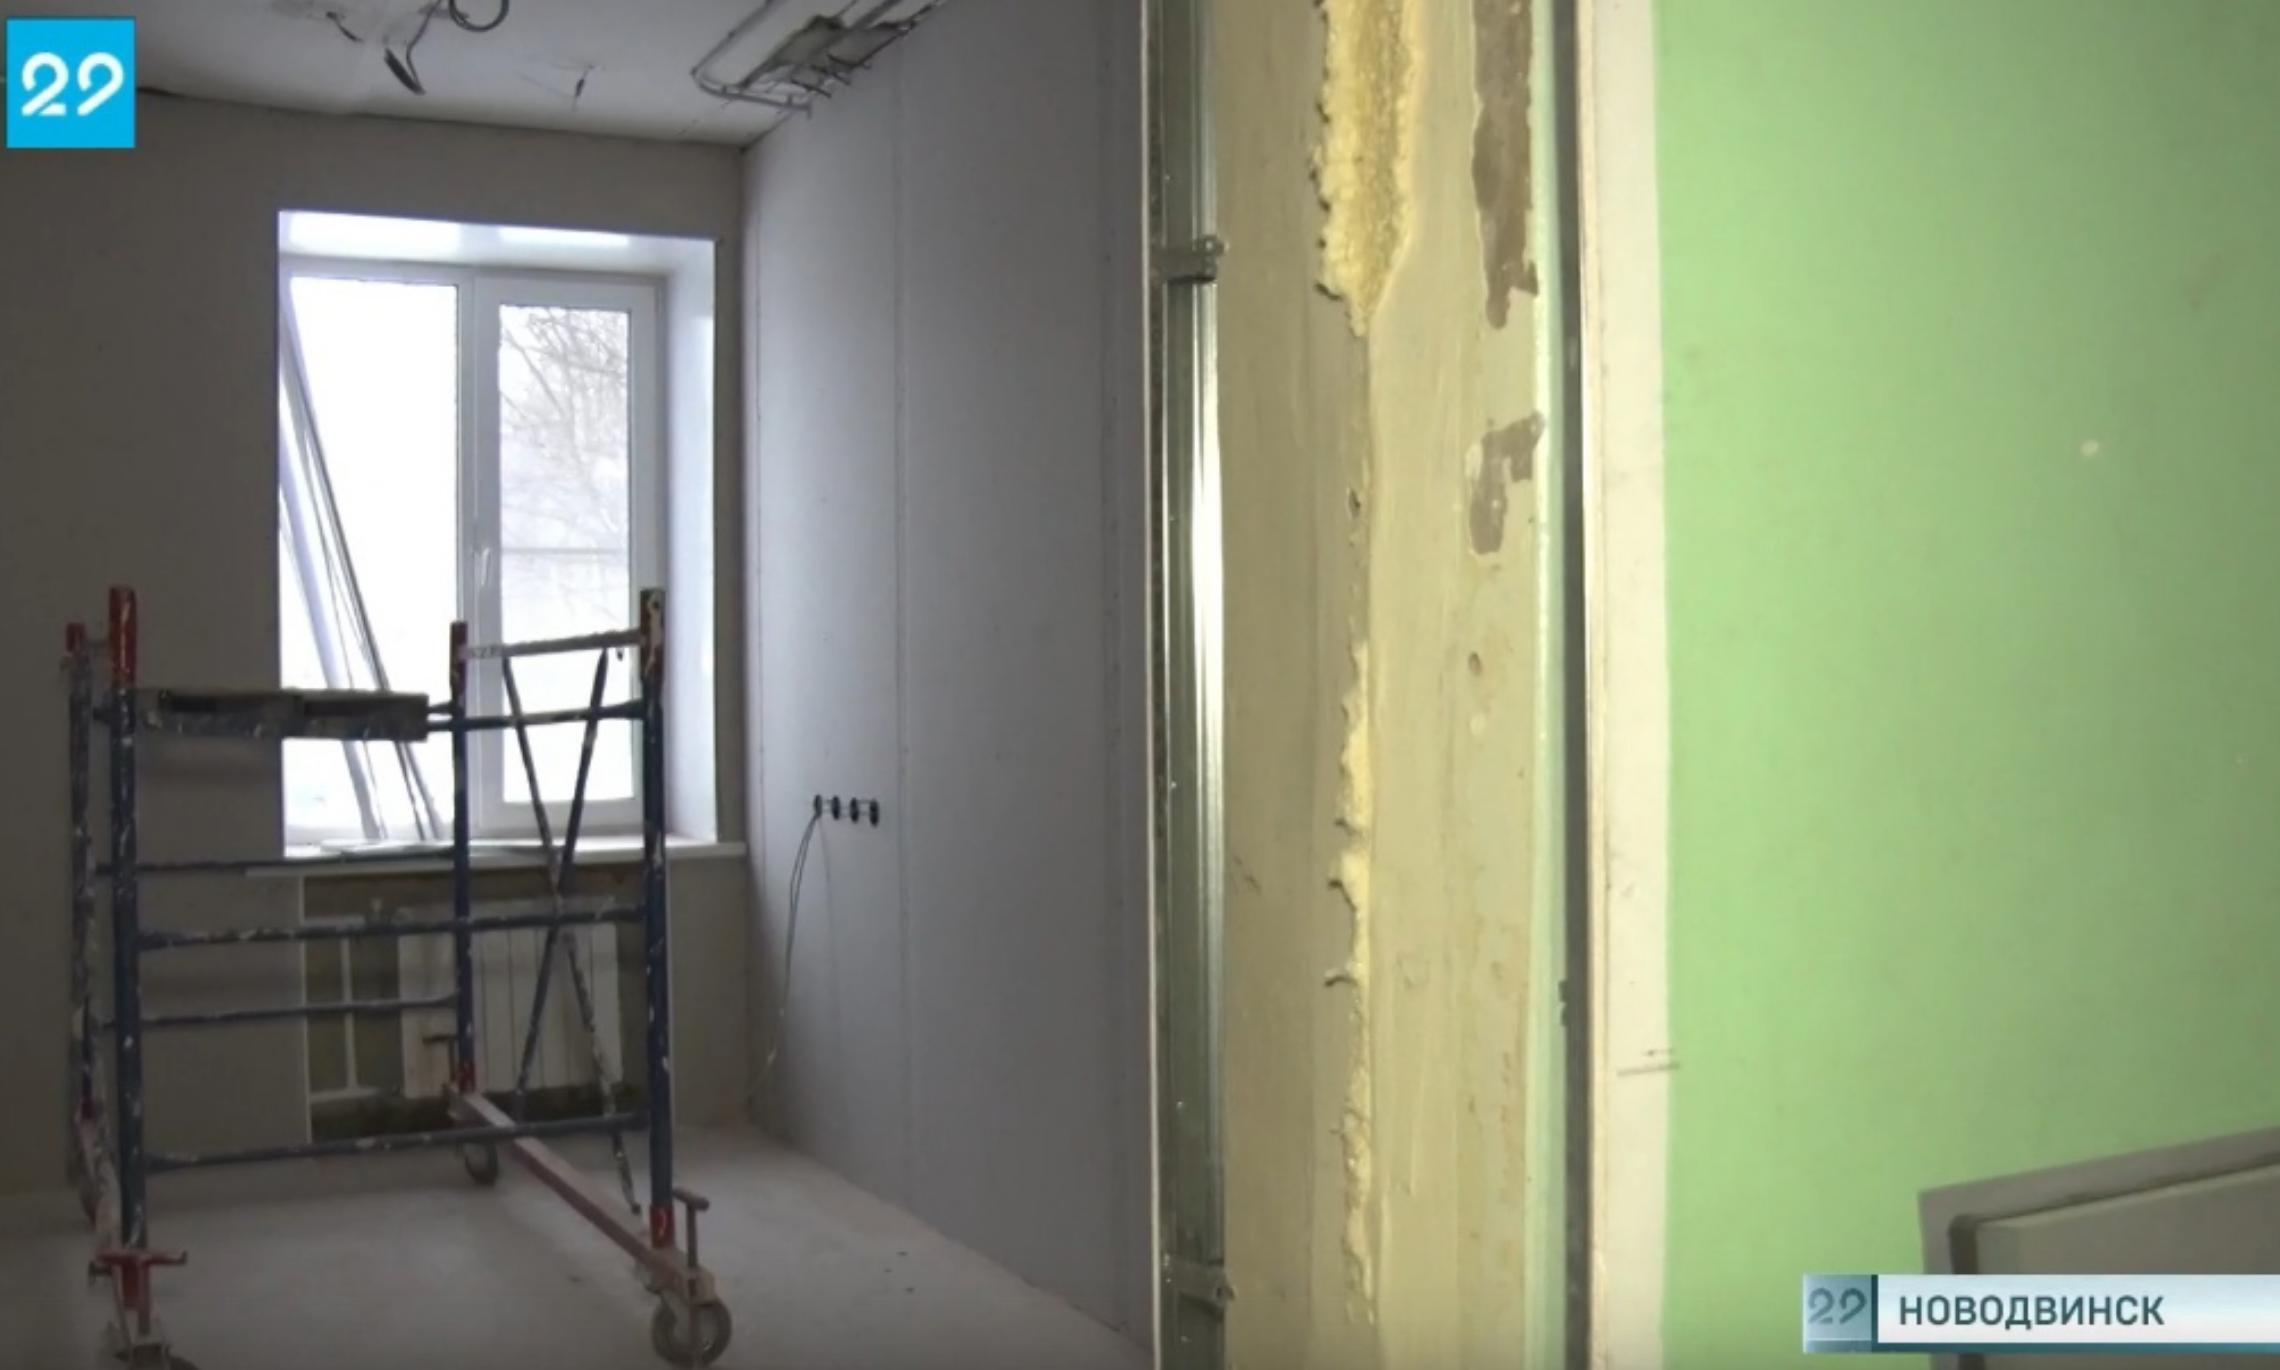 В Новодвинской городской больнице в очередной раз сдвинулась дата окончания ремонта